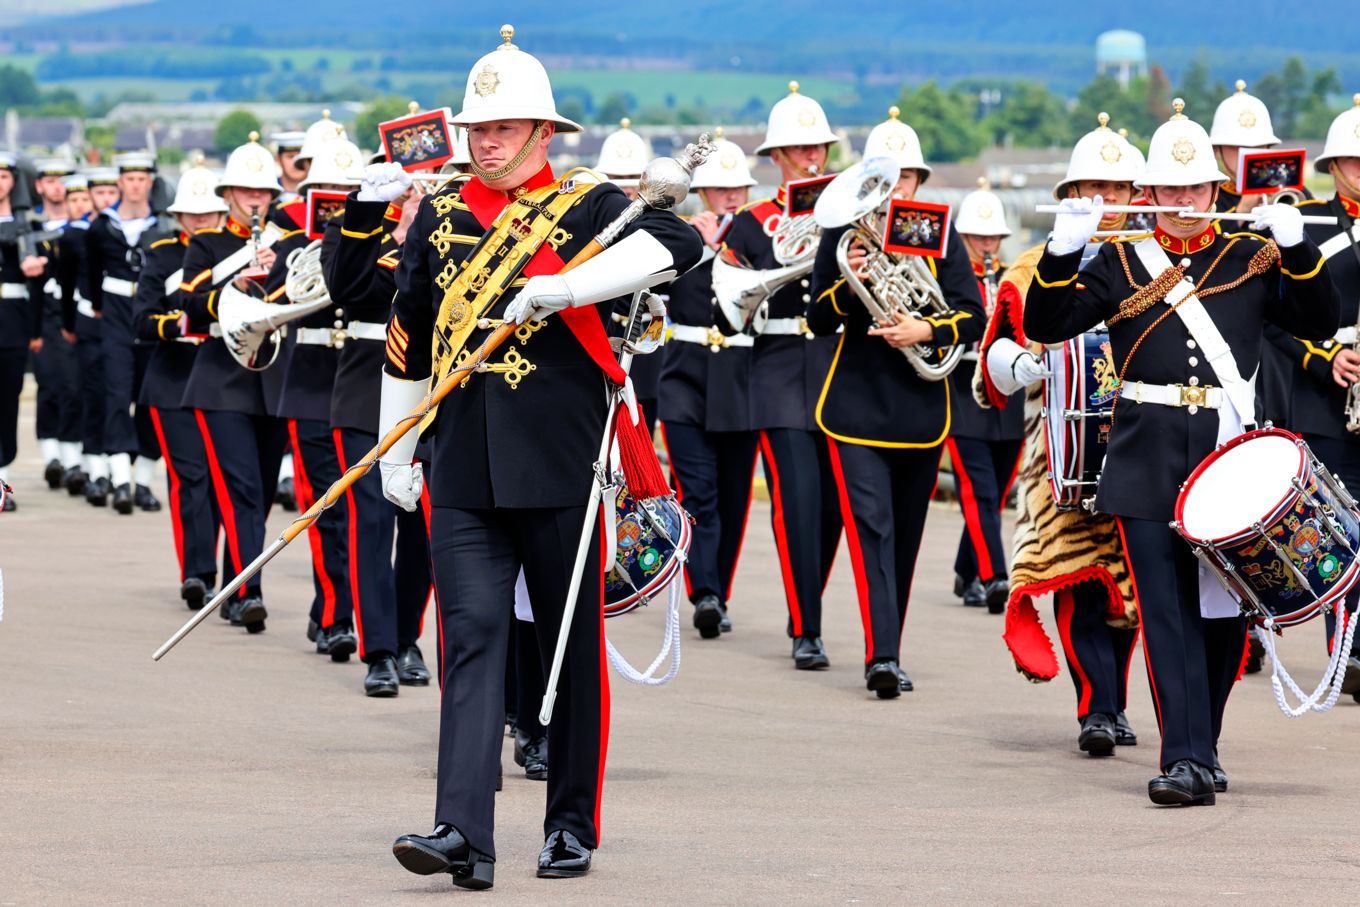 Royal Marines Scotland band perform.